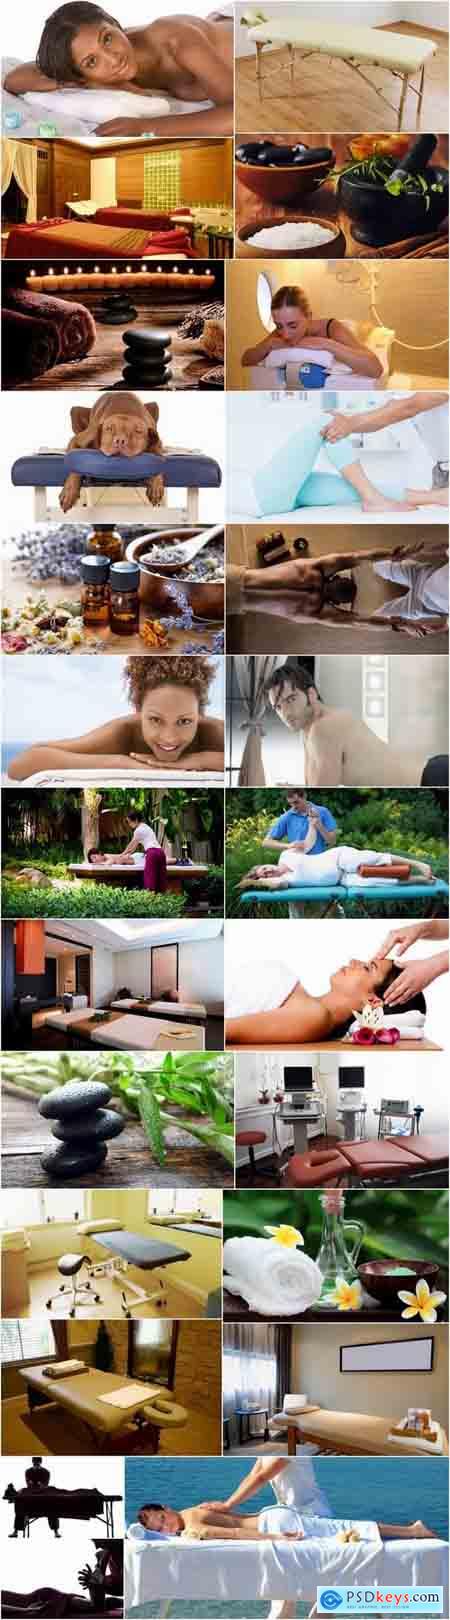 Massage table cabinet medicine oil salt rest 25 HQ Jpeg